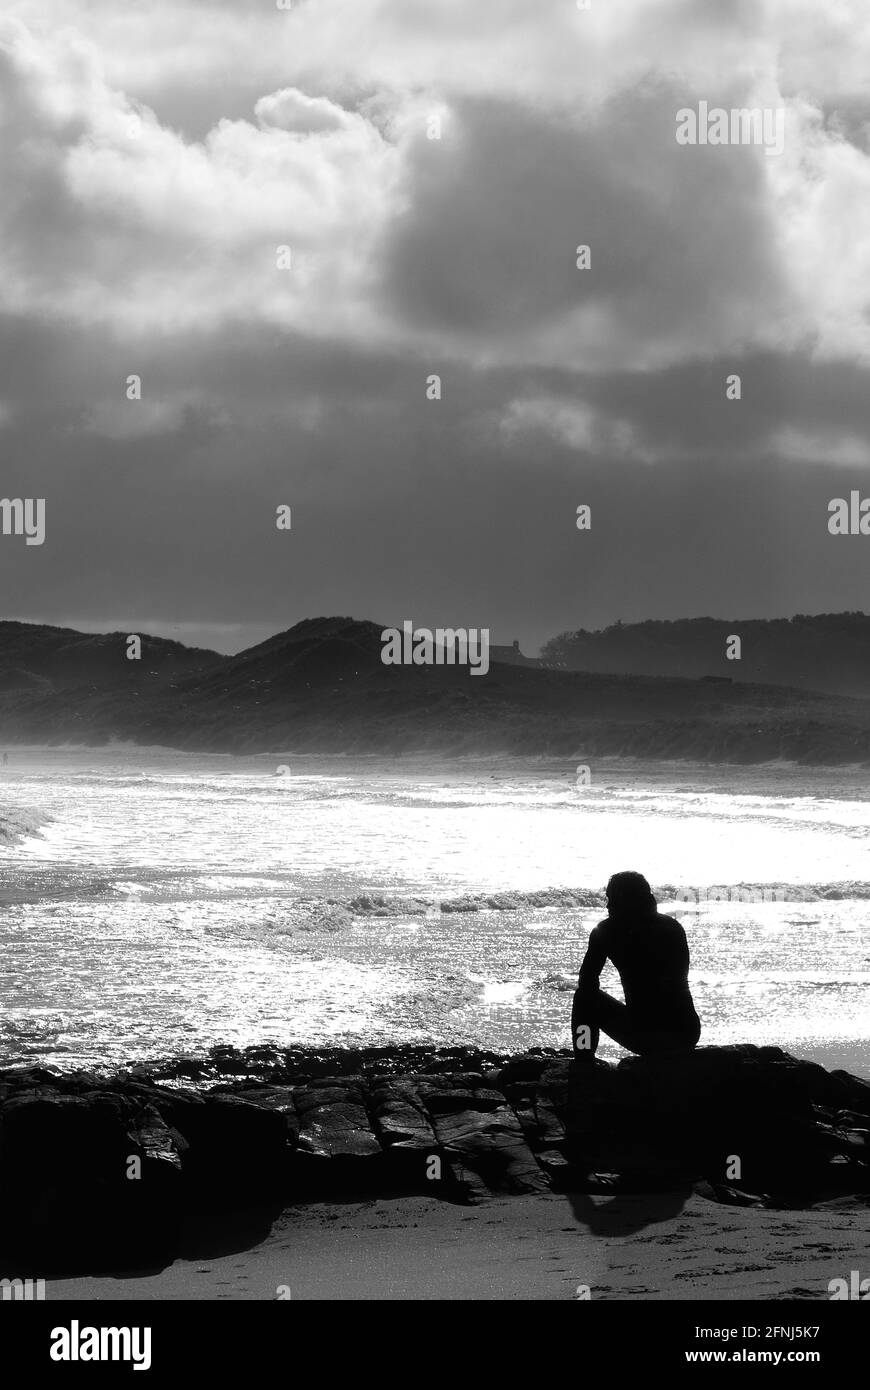 Imagen mono en formato vertical de una sola figura en silueta sentado sobre rocas en un entorno costero con telón de fondo de dunas y nubes a la deriva Foto de stock